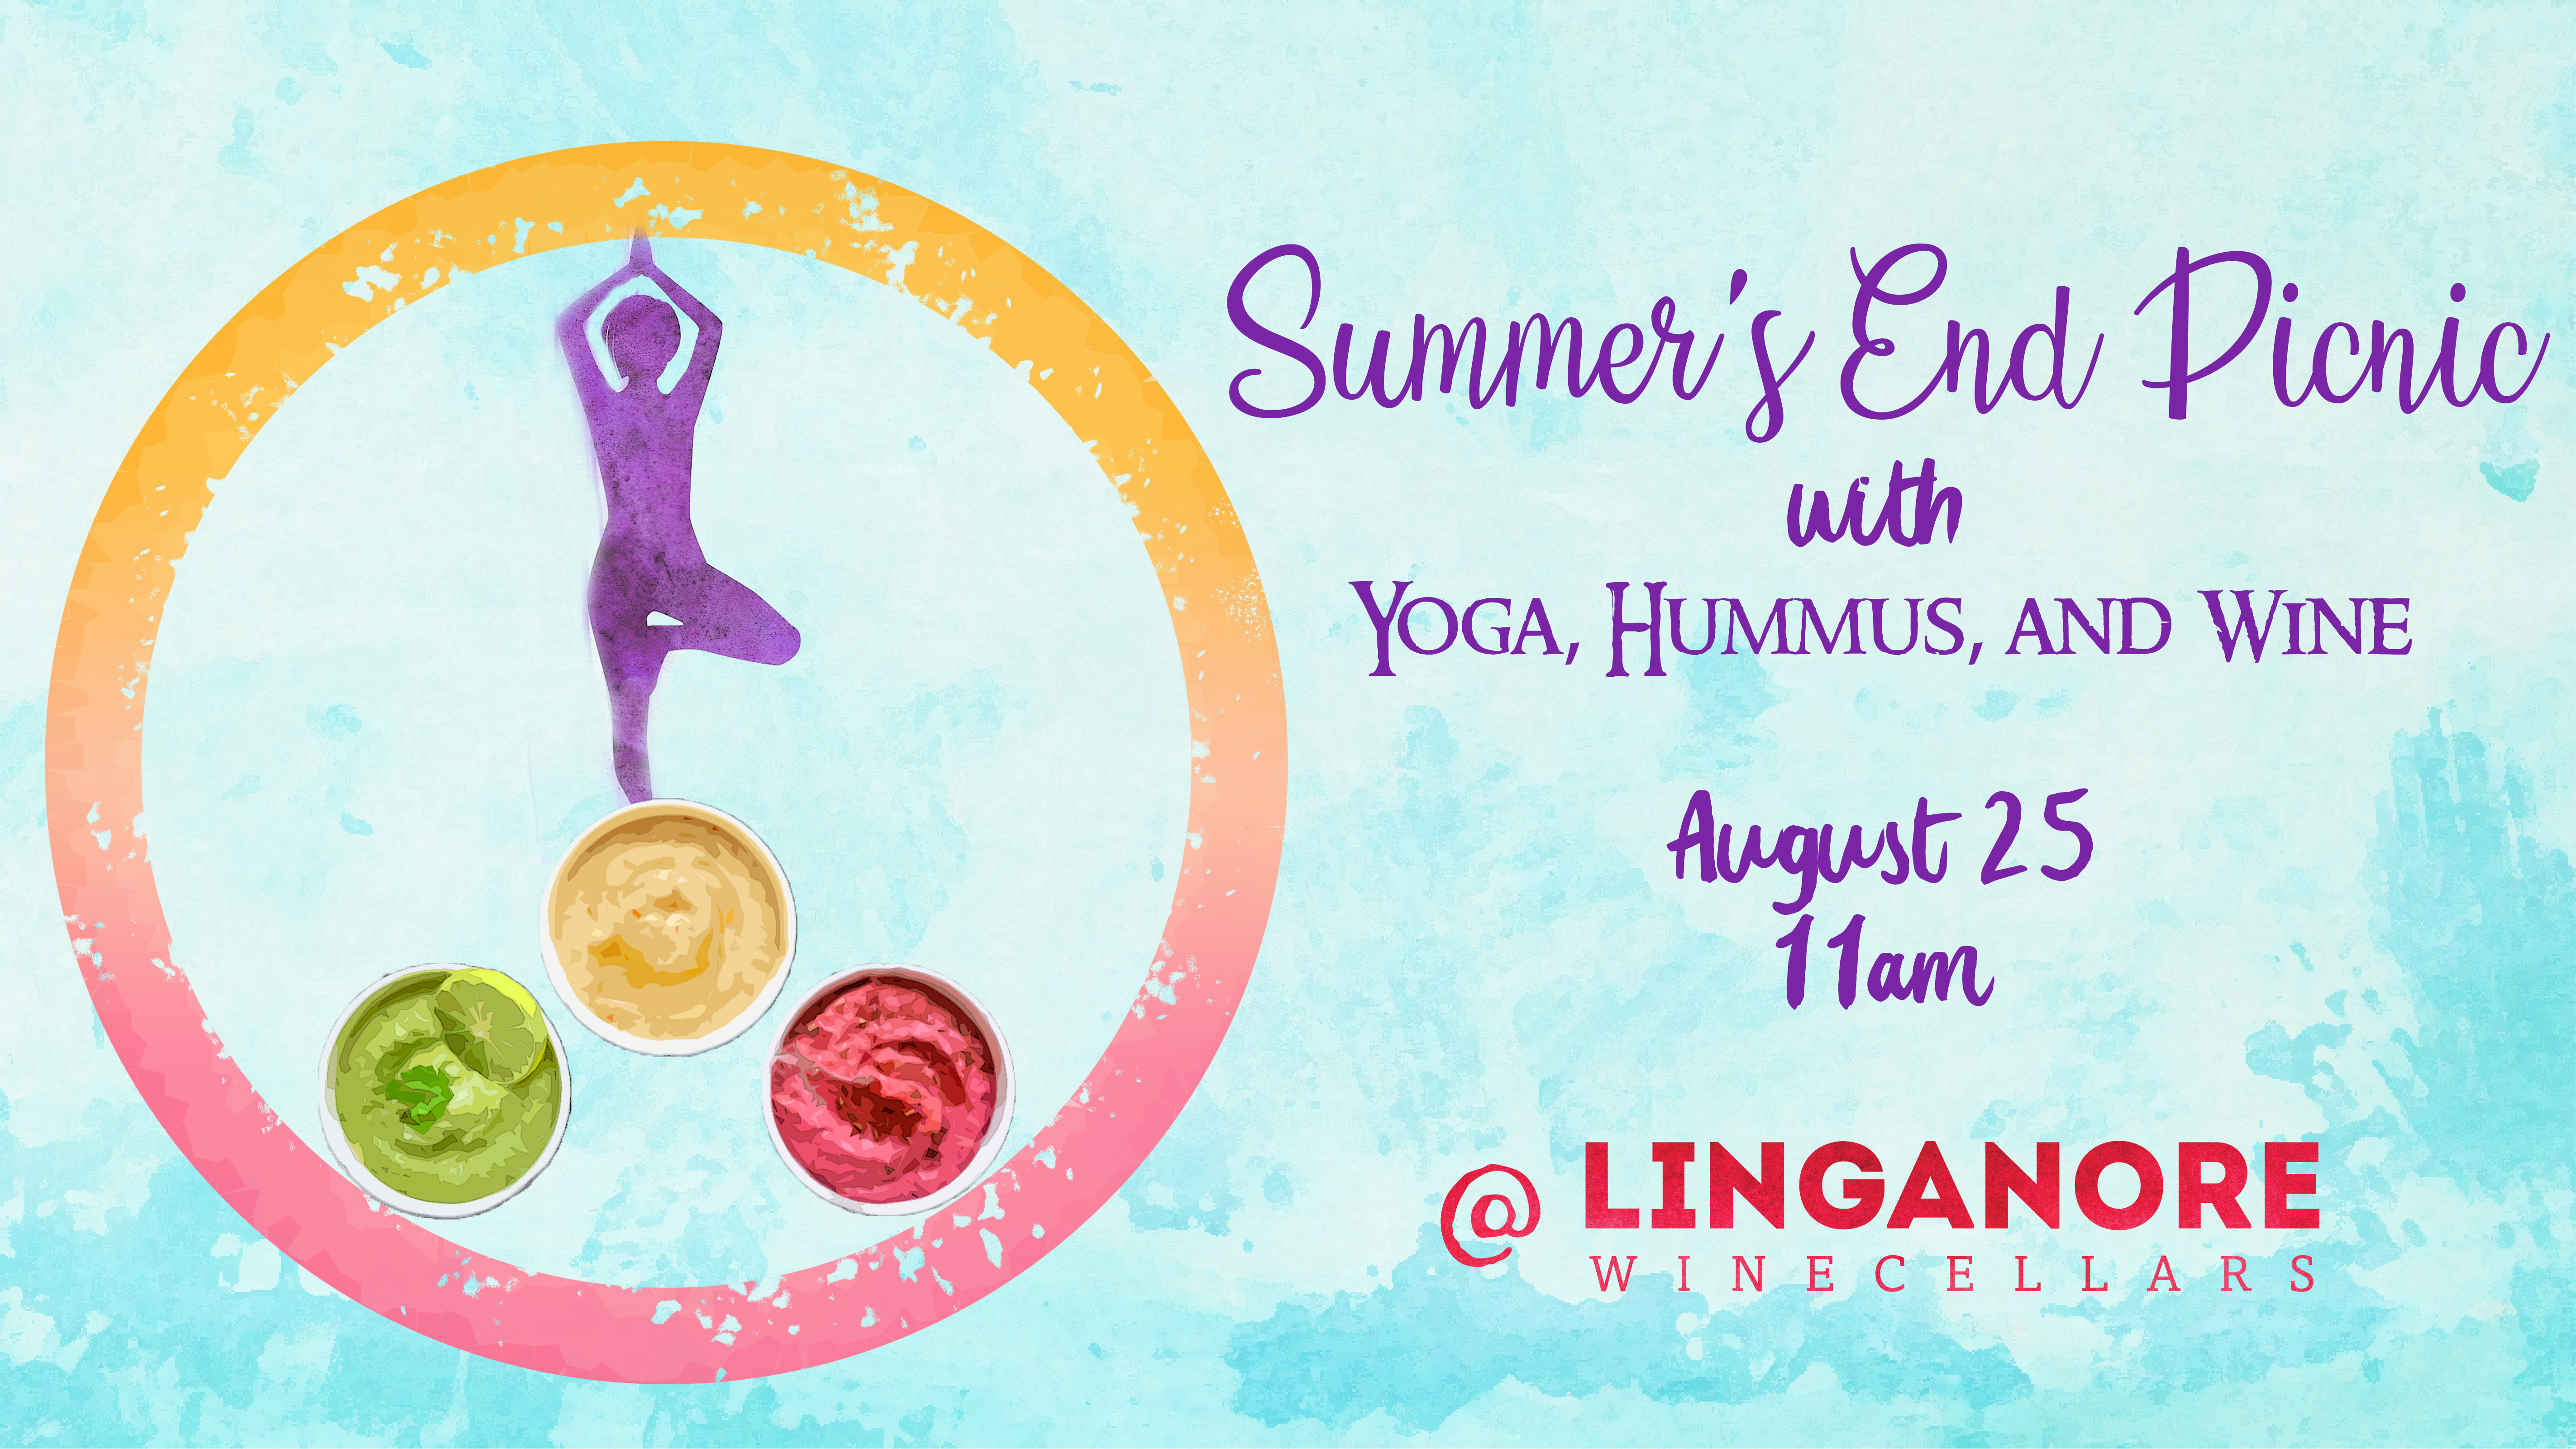 Hippy Chick Hummus And Linganore Wine Yoga